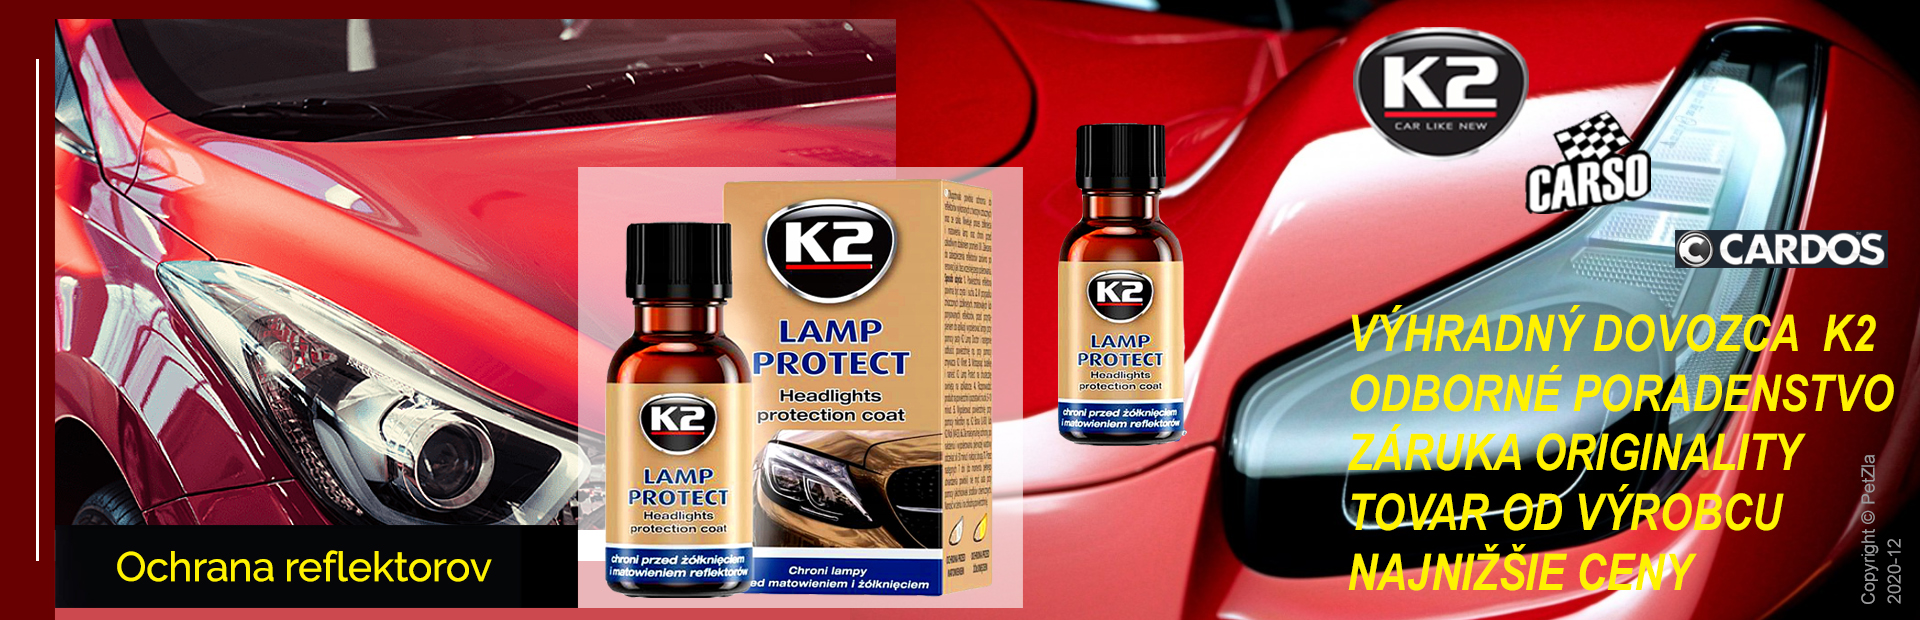 K2 LAMP PROTECT